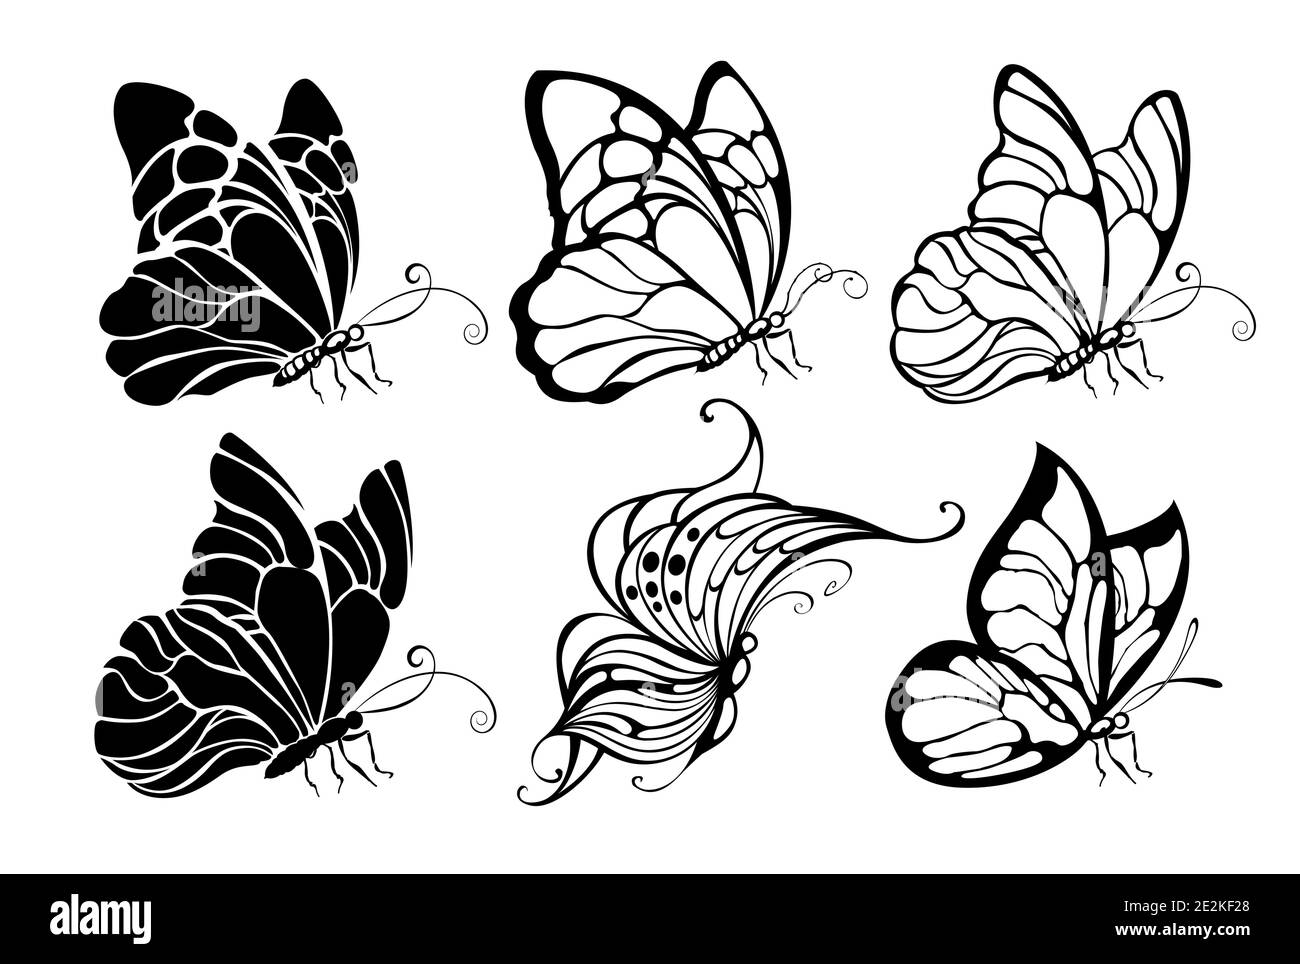 Set artisticamente disegnato, contornato, seduto, farfalle nere su sfondo bianco. Farfalle. Elemento di progettazione. Illustrazione Vettoriale